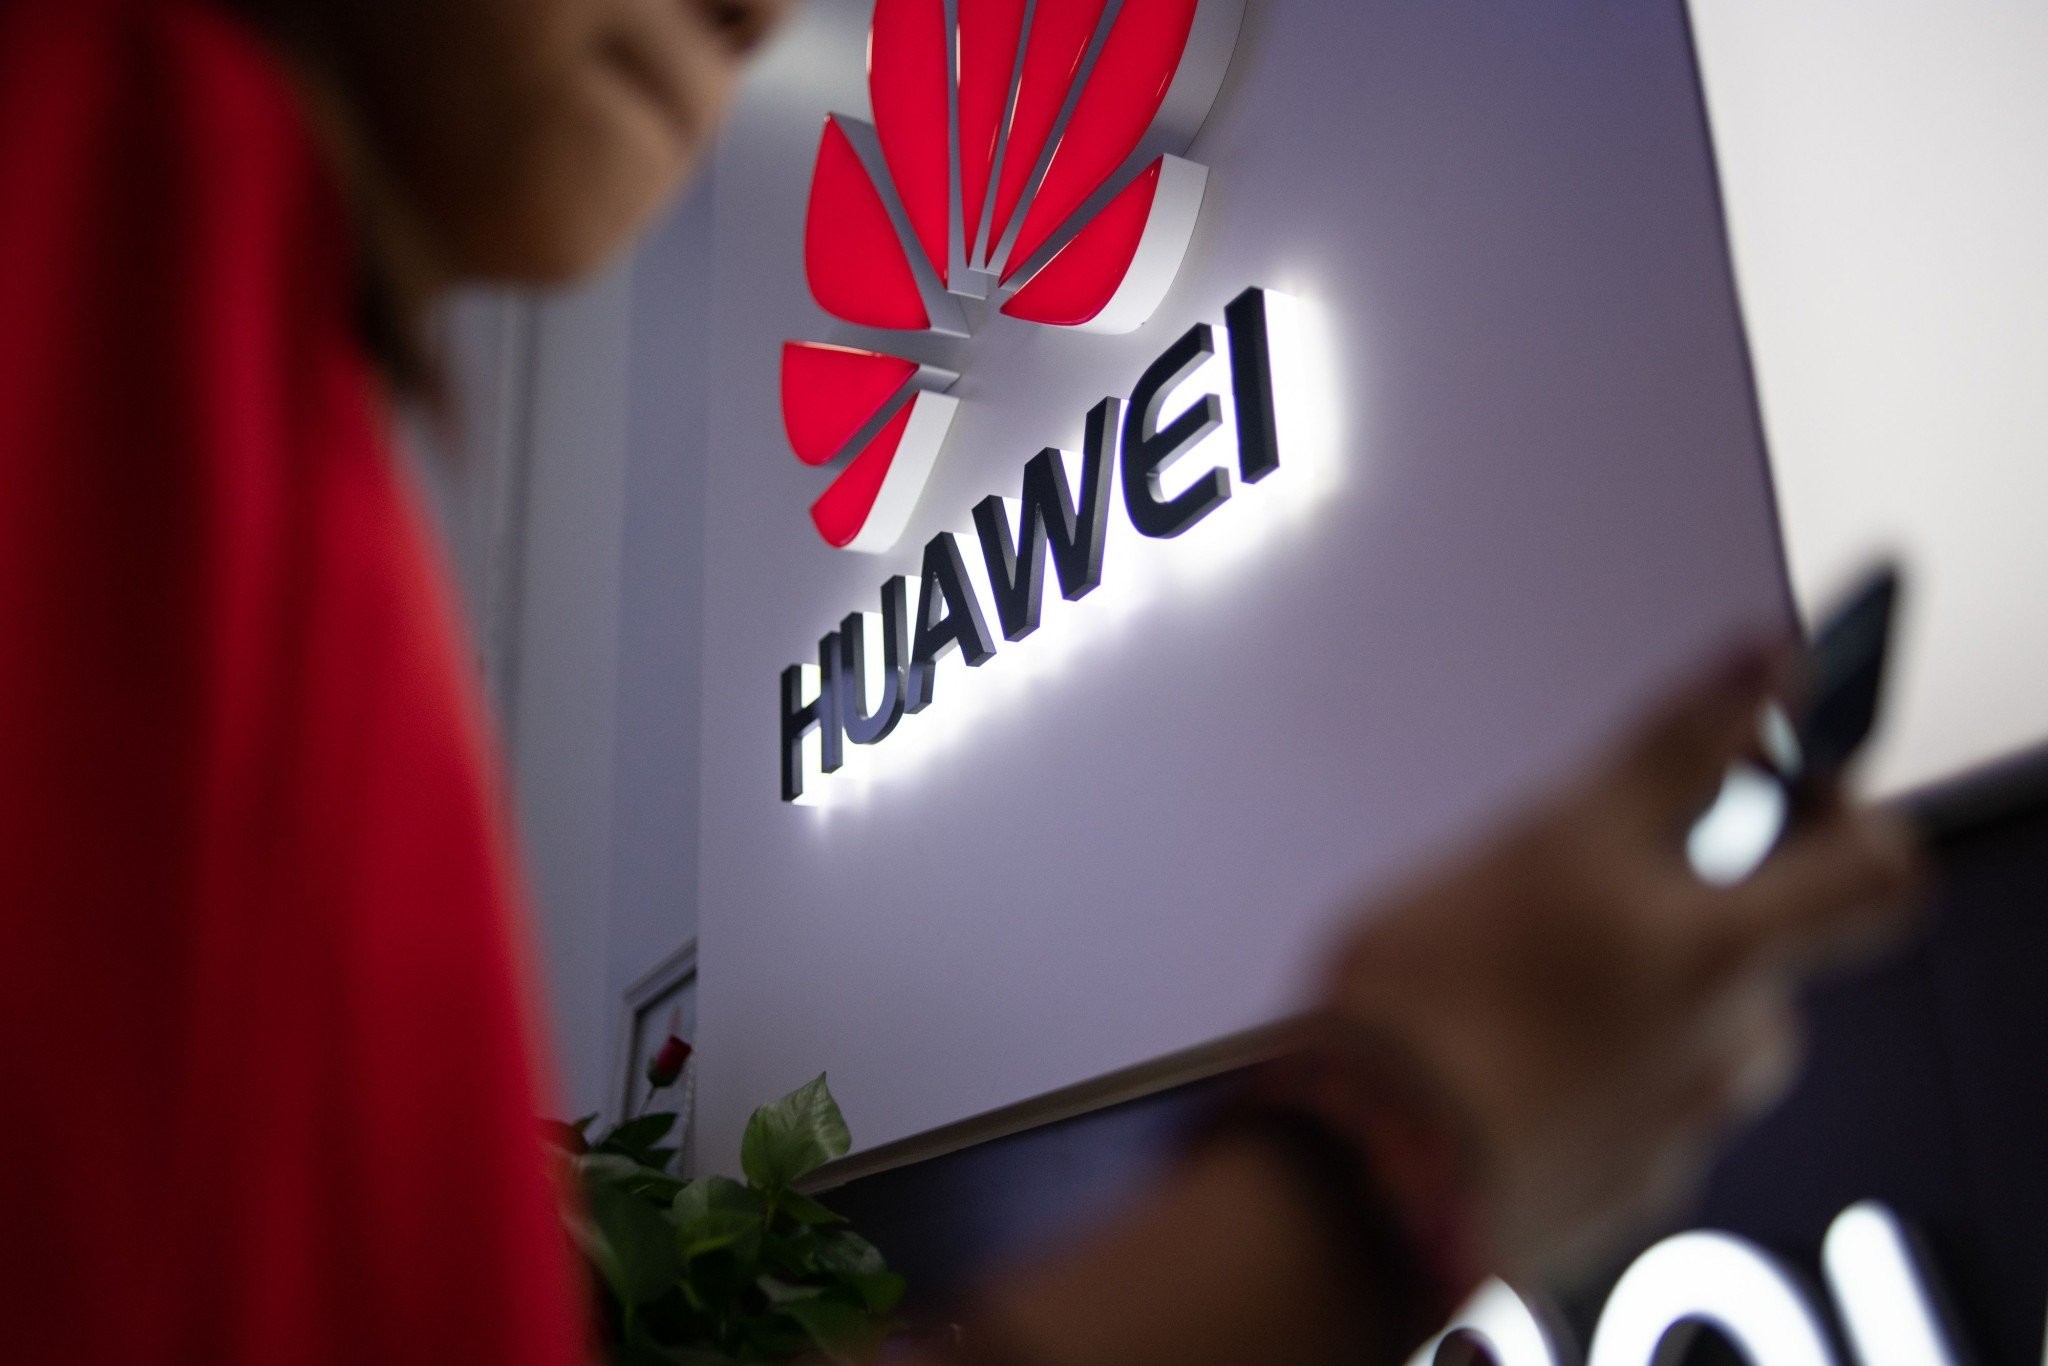 Ακόμη 90 ημέρες παράταση στη Huawei, αλλά αβέβαιο το μέλλον μετά τις νέες δηλώσεις Trump [Update]